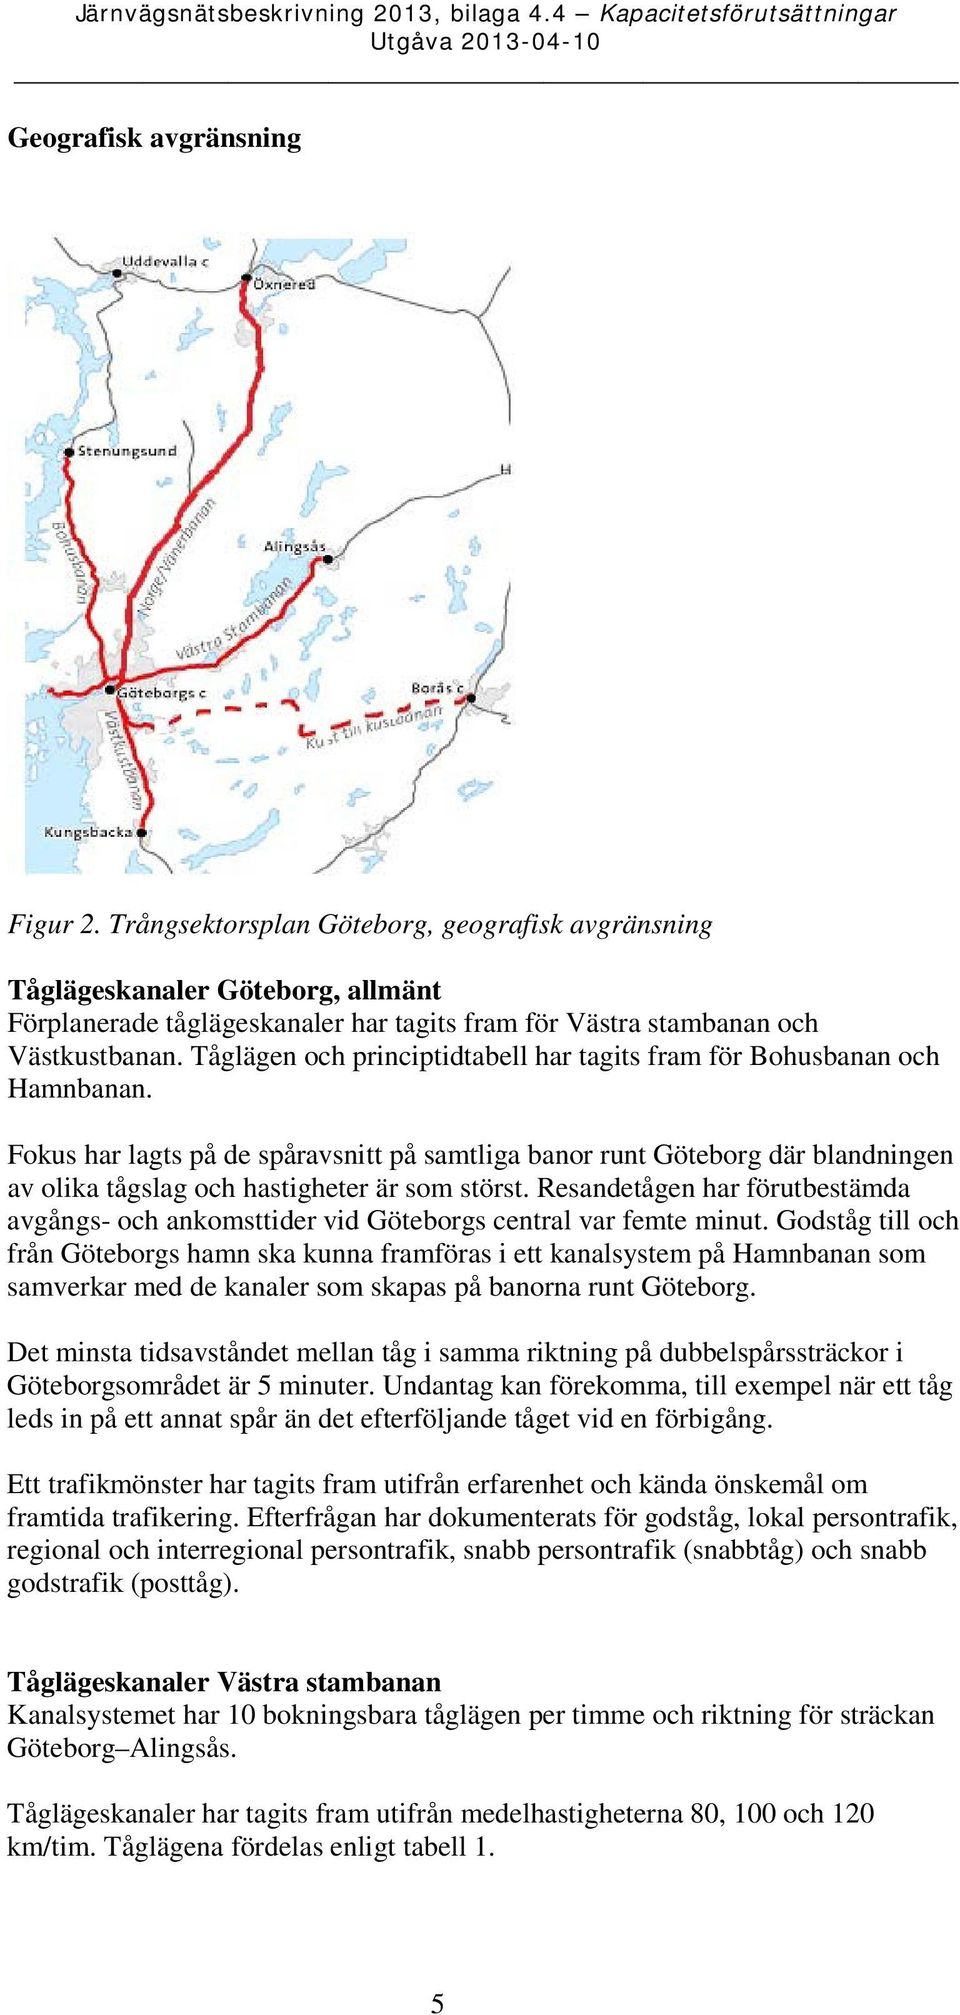 Fokus har lagts på de spåravsnitt på samtliga banor runt Göteborg där blandningen av olika tågslag och hastigheter är som störst.